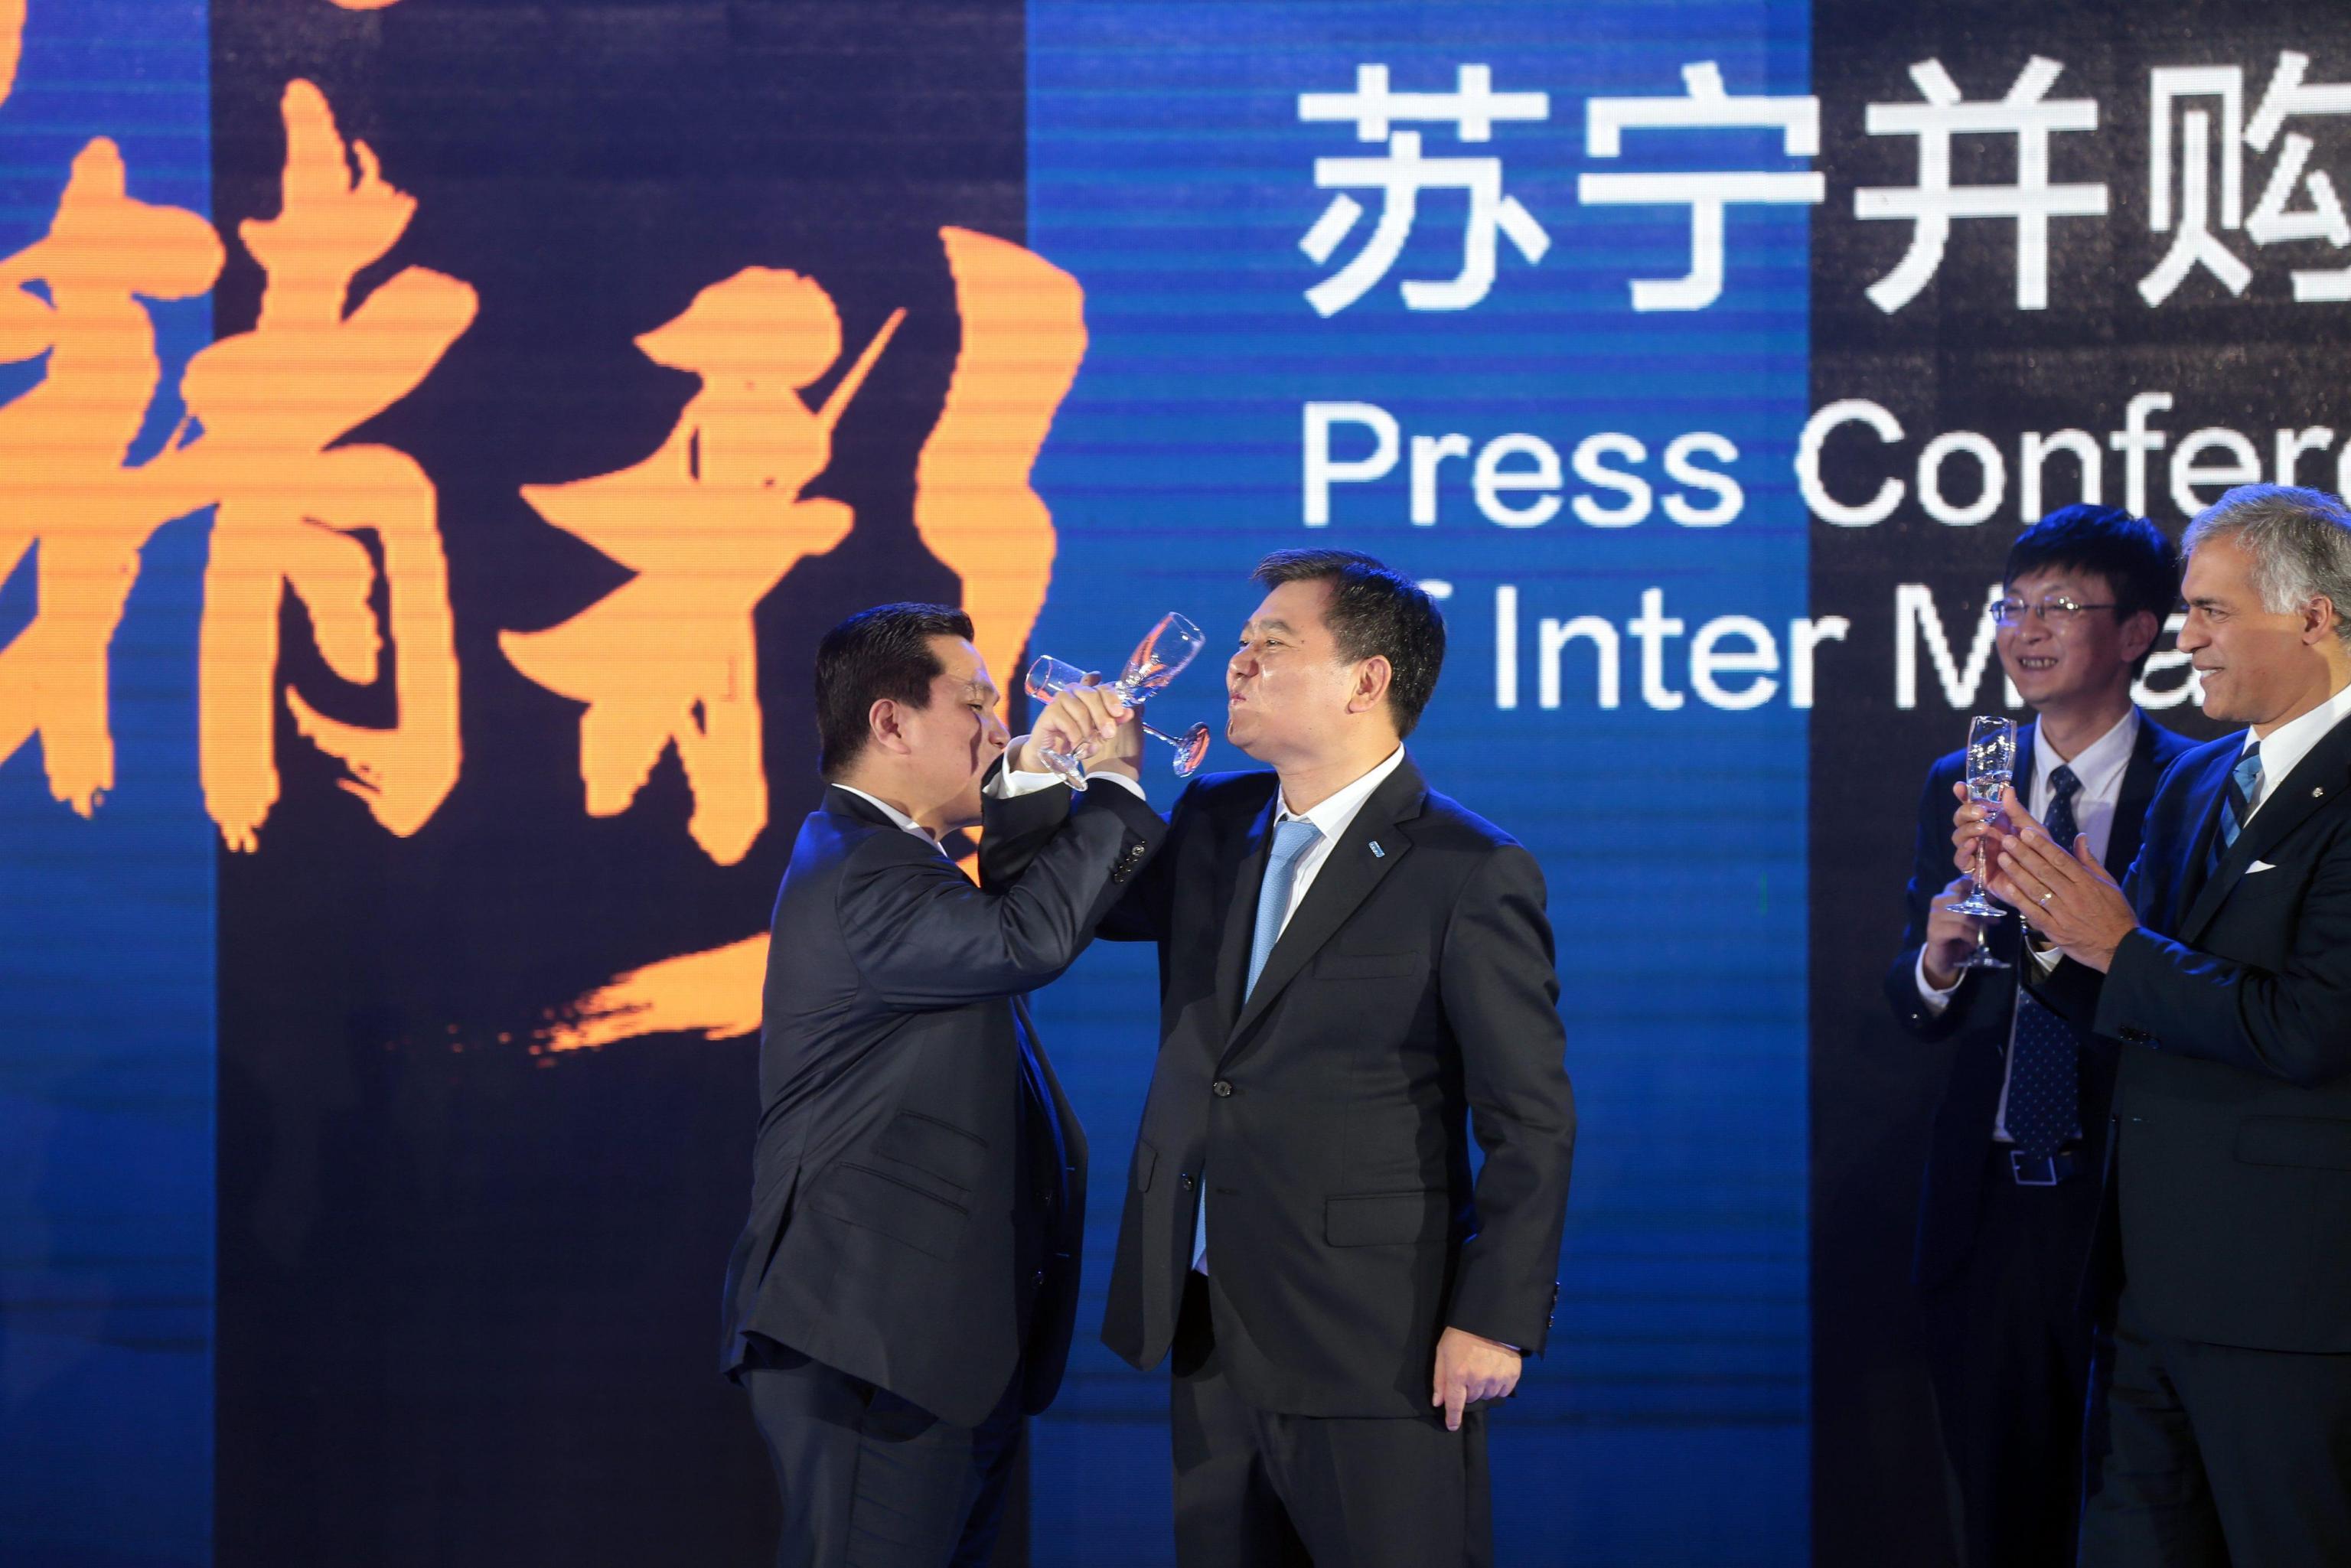 Thohir e Zhang ratificano l'acquisto delle quote di maggioranza dell'Inter da parte di Suning Group